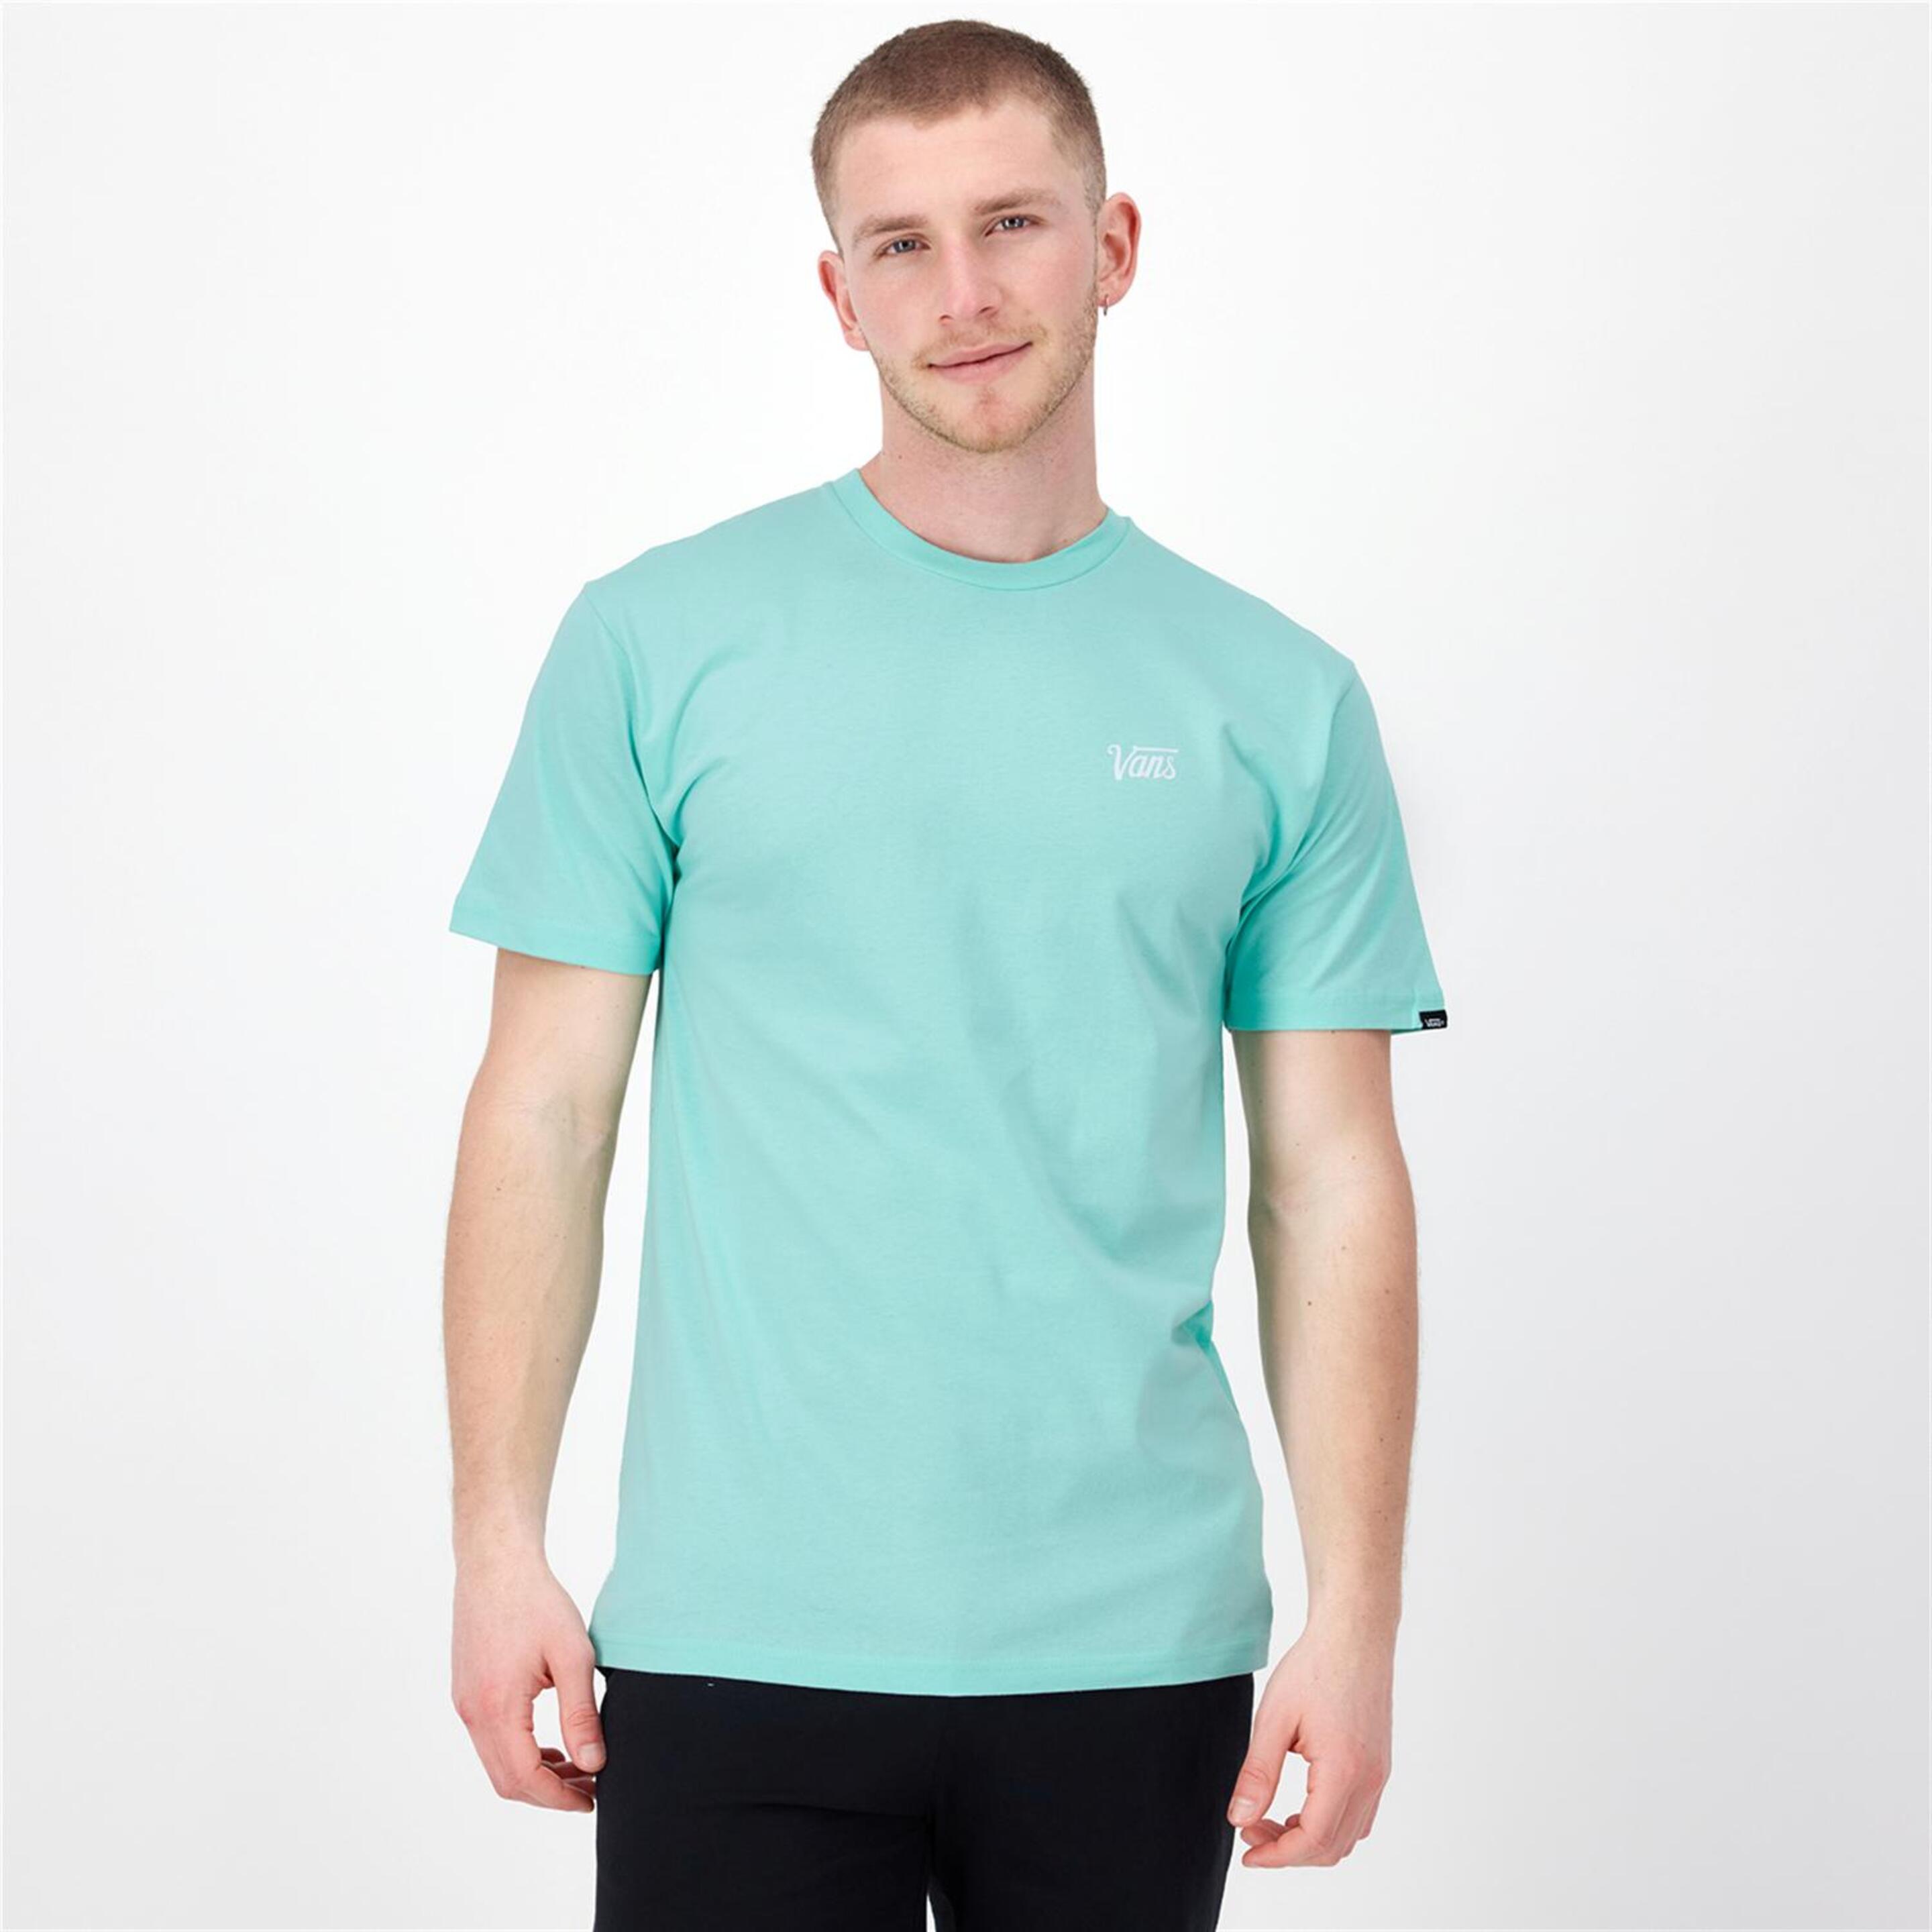 Vans Small Logo - Turquesa - Camiseta Hombre